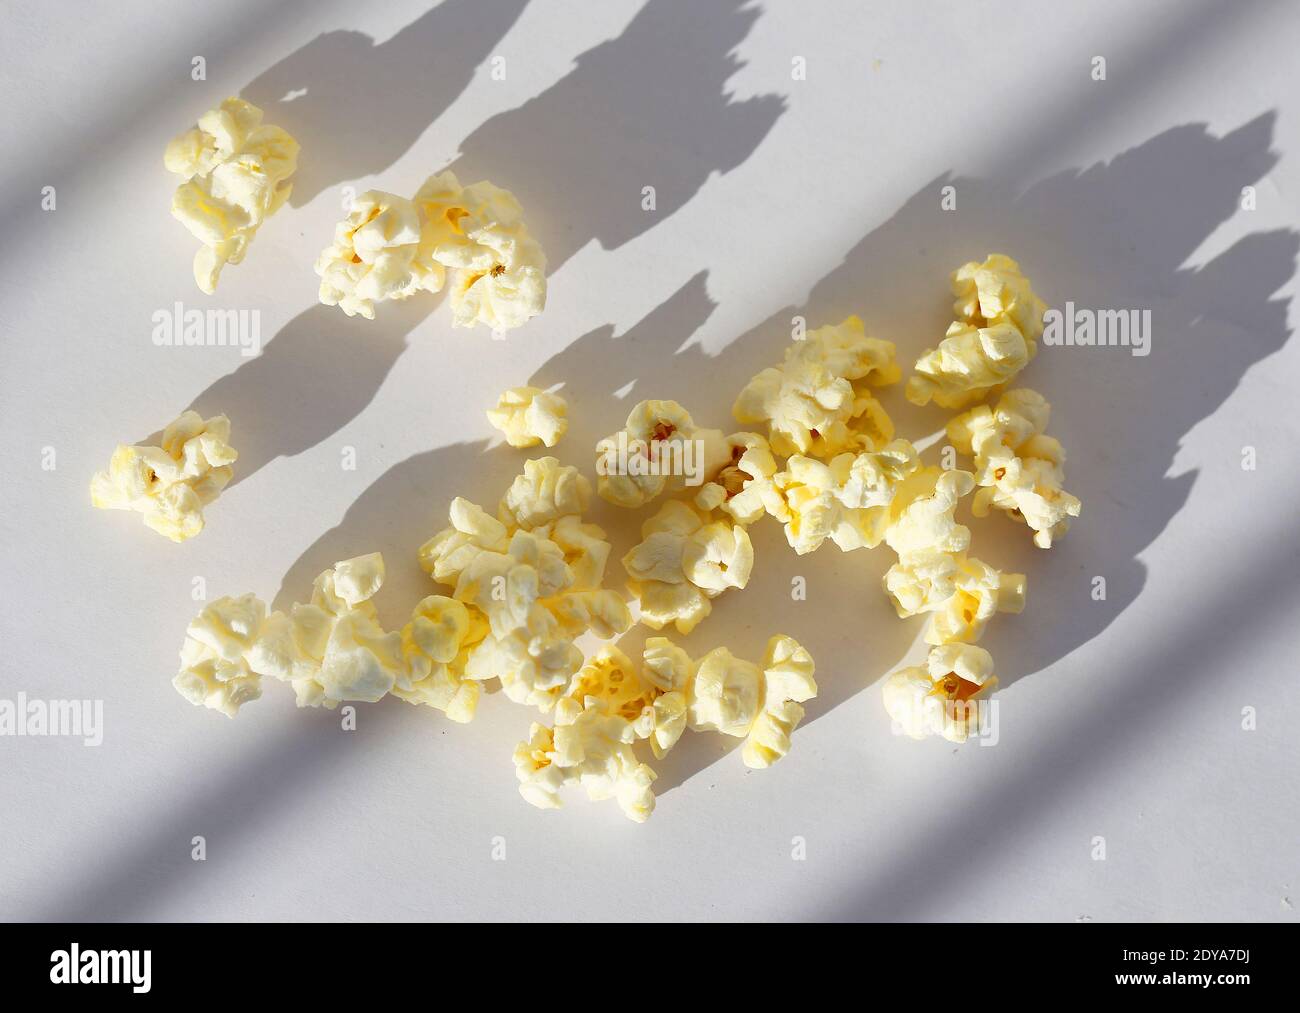 Foto de palomitas de maíz saladas aisladas sobre fondo blanco. Ejemplo de palomitas de maíz para la publicidad de aperitivos Foto de stock